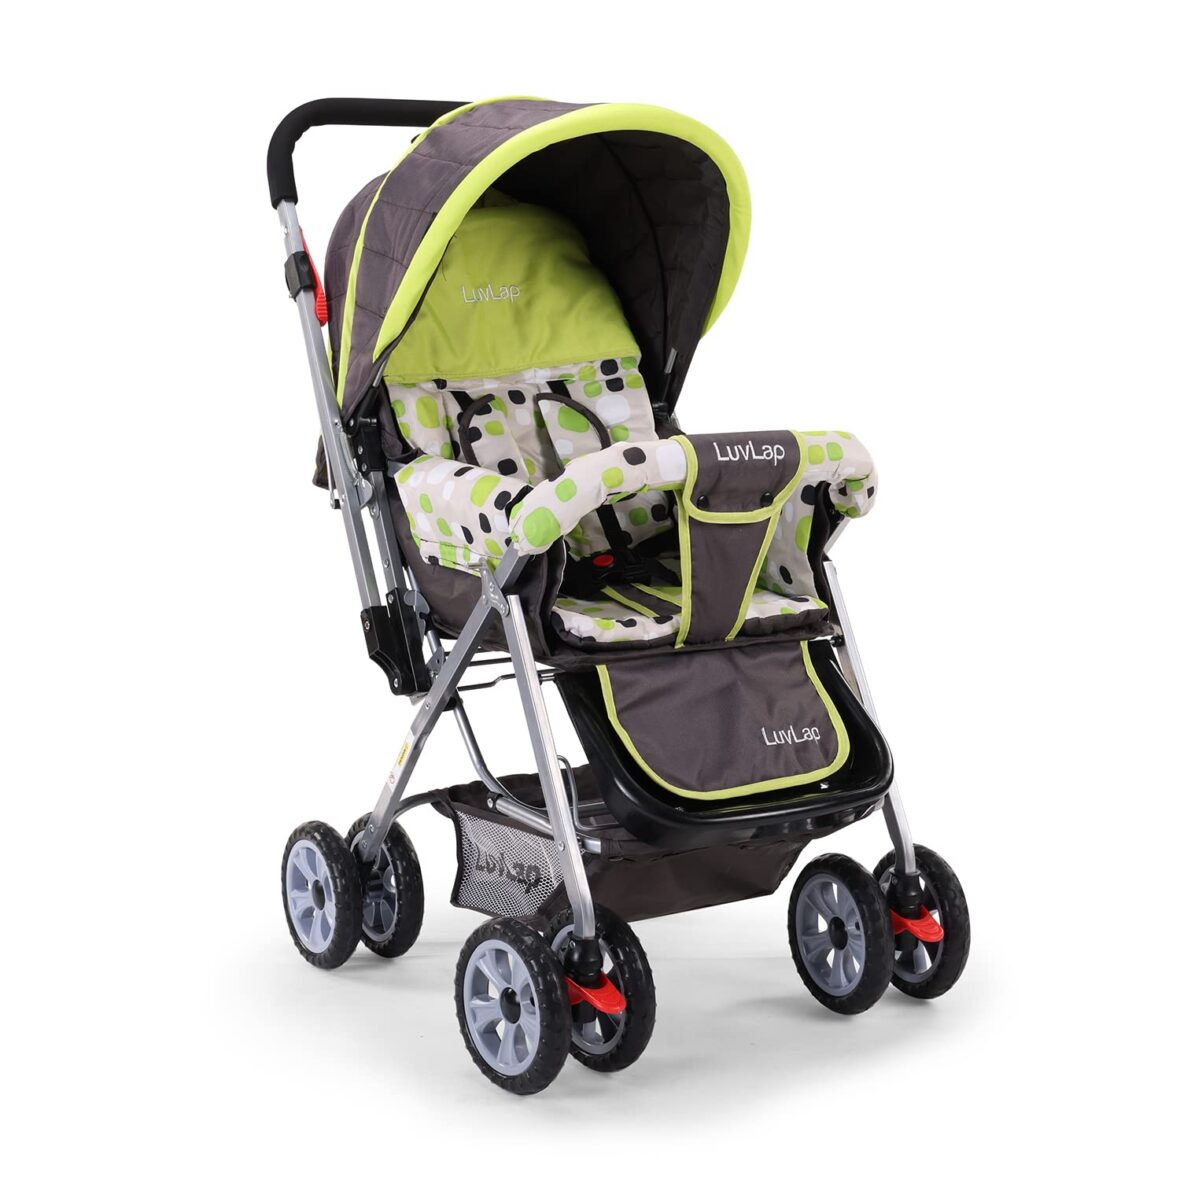 Luvlap Sunshine Stroller/Pram, Easy Fold, for Newborn Baby/Kids, 0-3 Years Multicolor